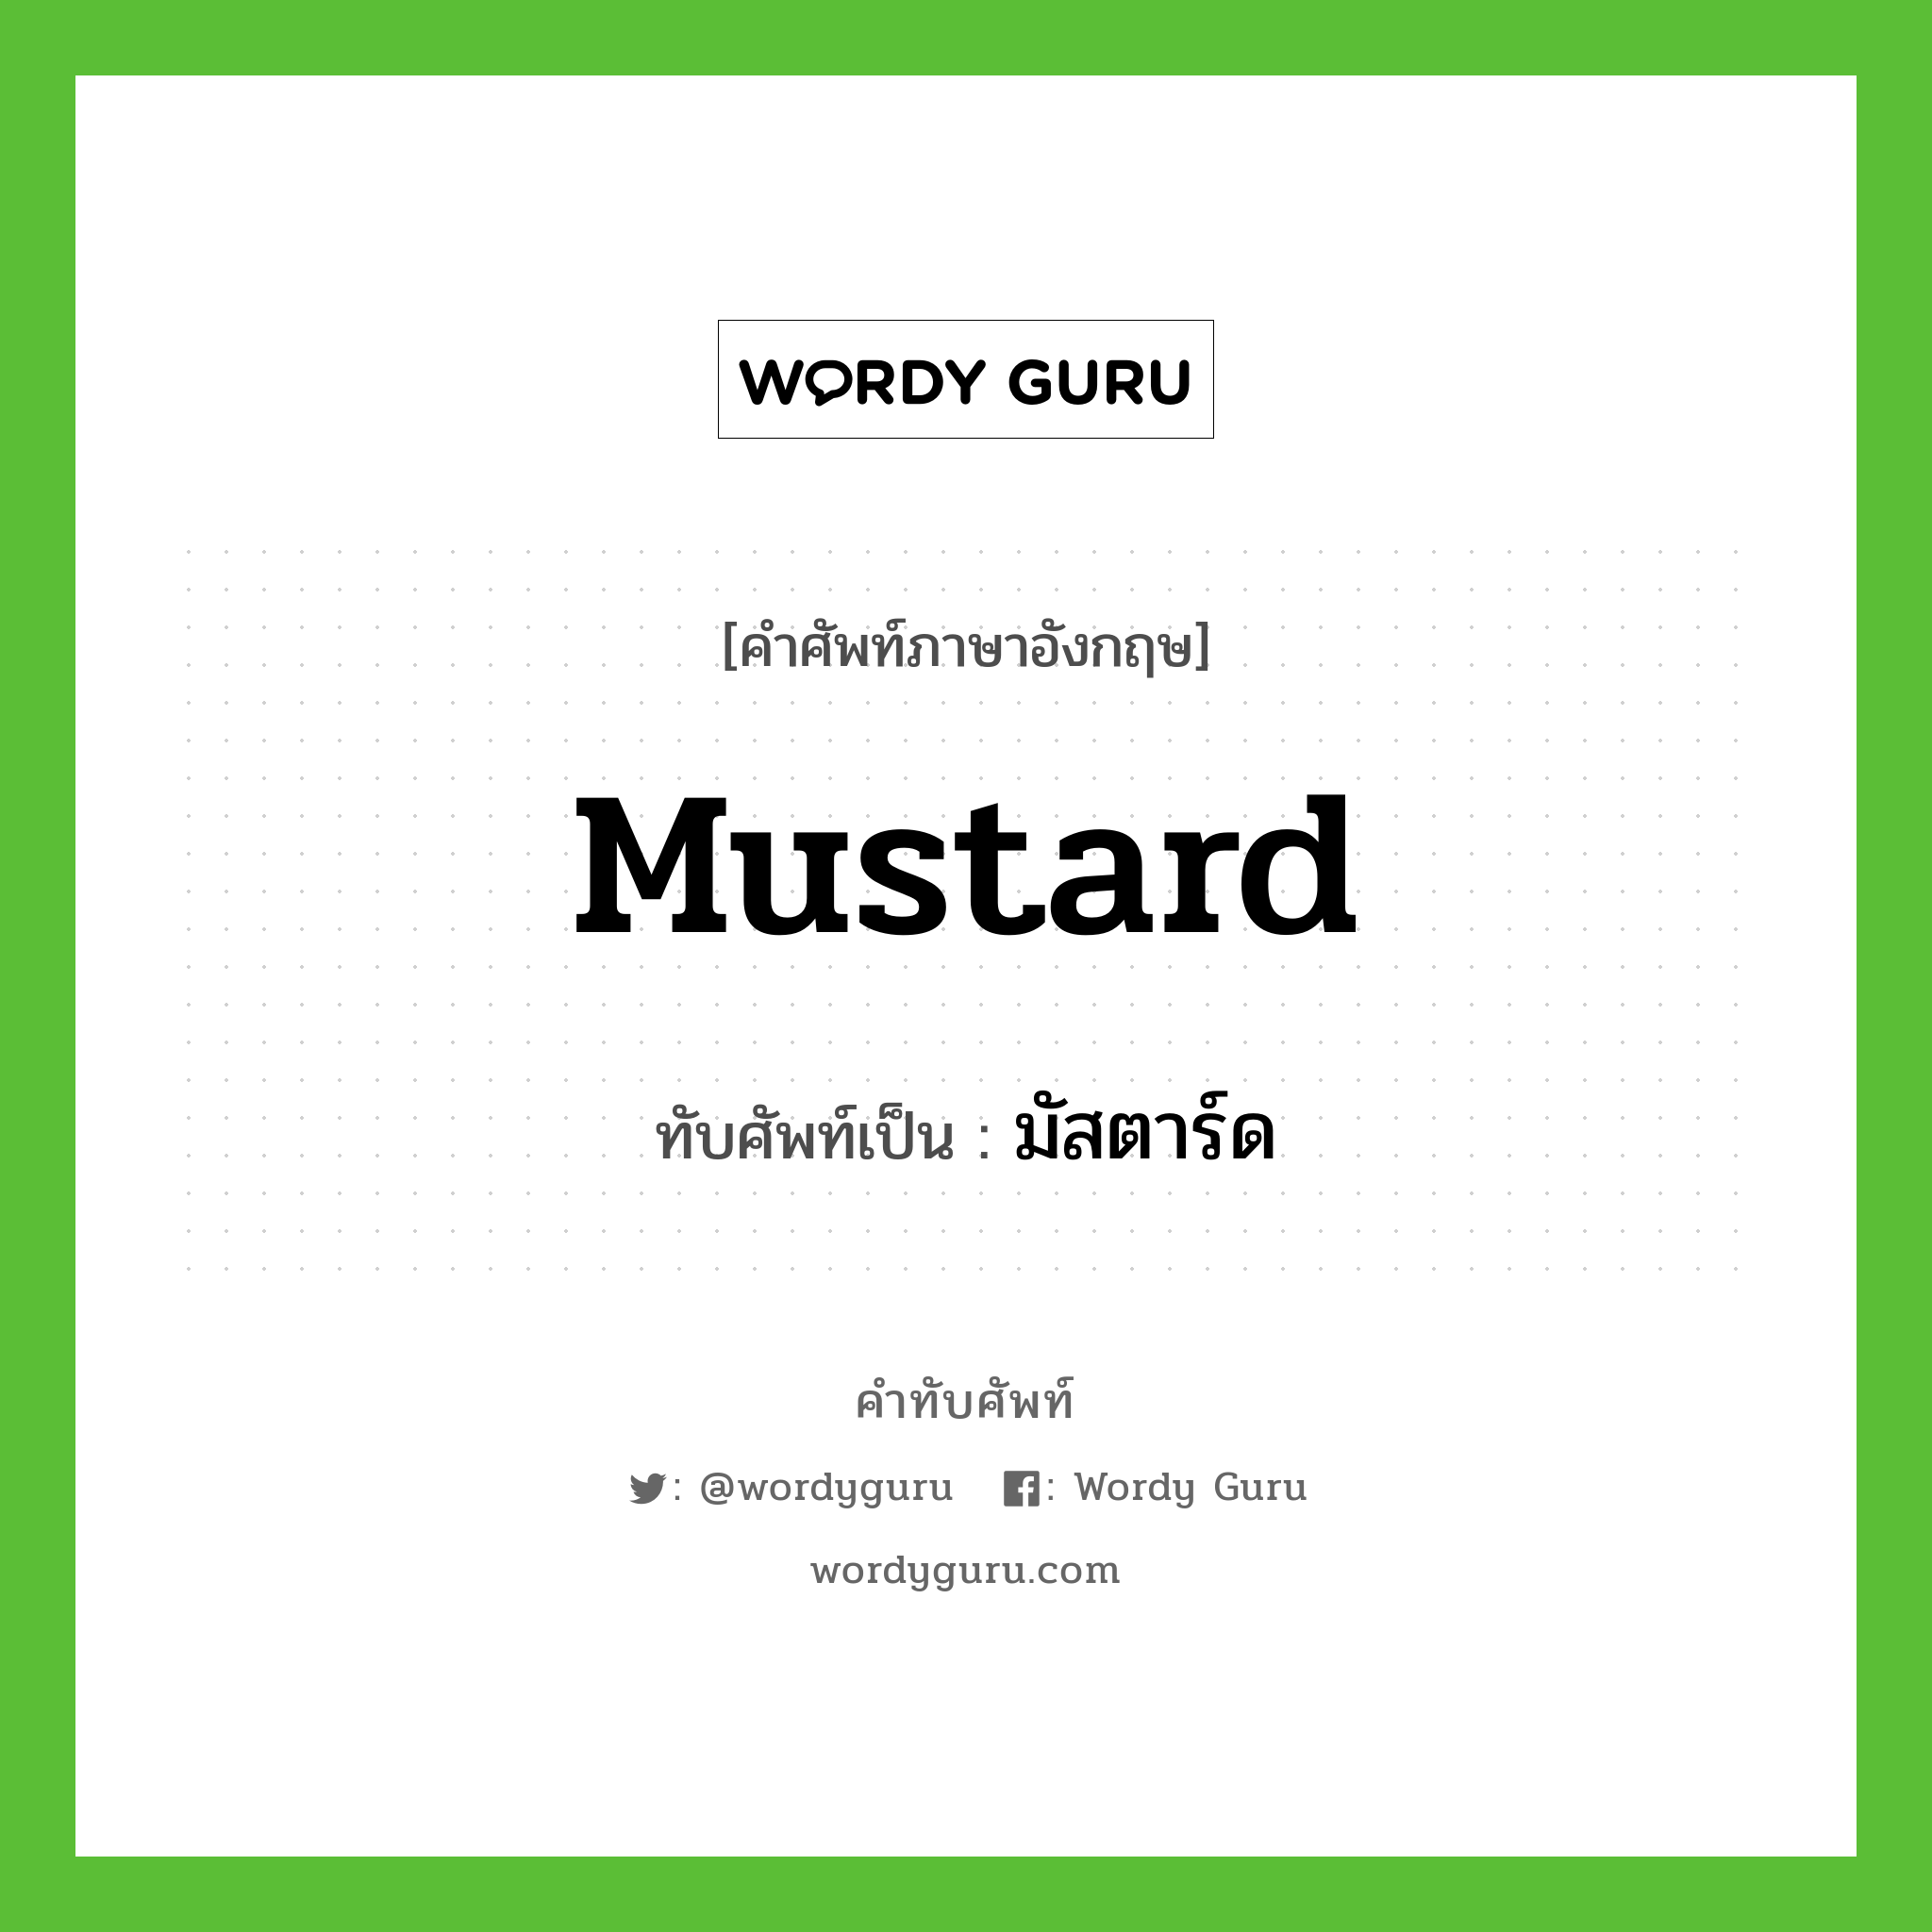 มัสตาร์ด เขียนอย่างไร?, คำศัพท์ภาษาอังกฤษ มัสตาร์ด ทับศัพท์เป็น mustard